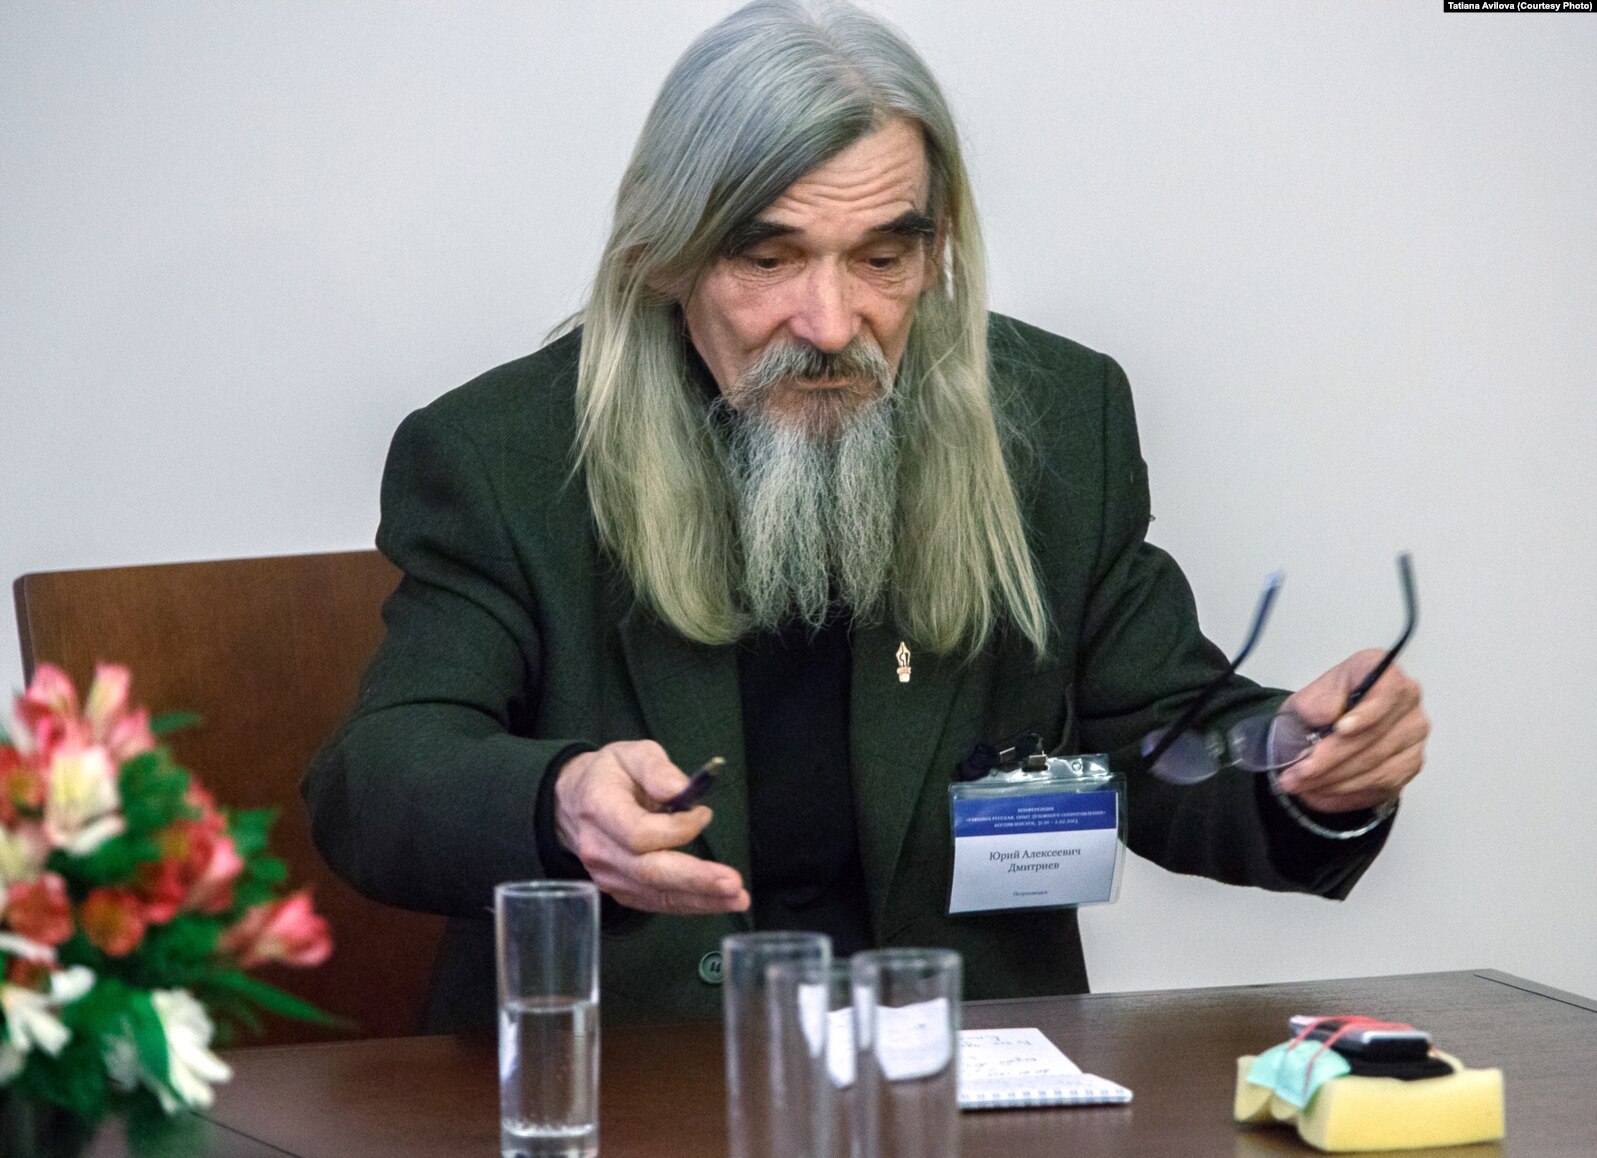 Юрий Дмитриев на конференции "Равнина Русская" (2013). Фото Т. Авиловой